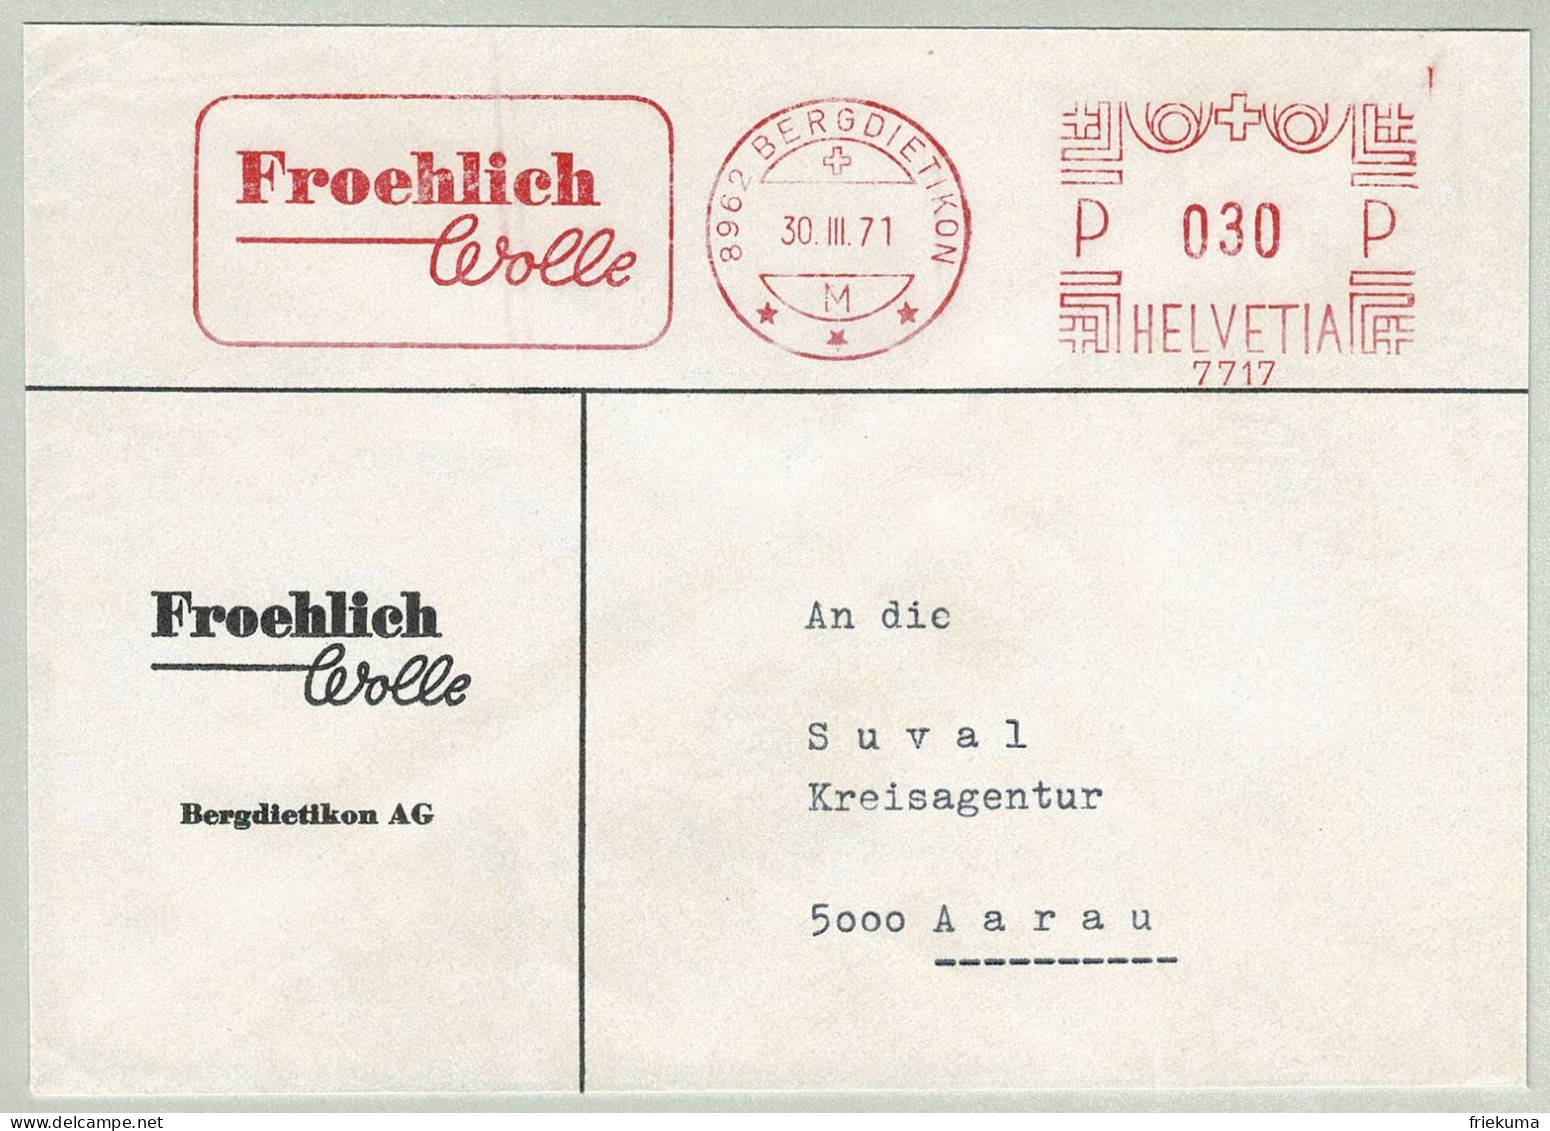 Schweiz / Helvetia 1971, Brief Freistempel / EMA / Meterstamp Froelich Wolle Bergdietikon - Aarau, Laine / Wool - Textile